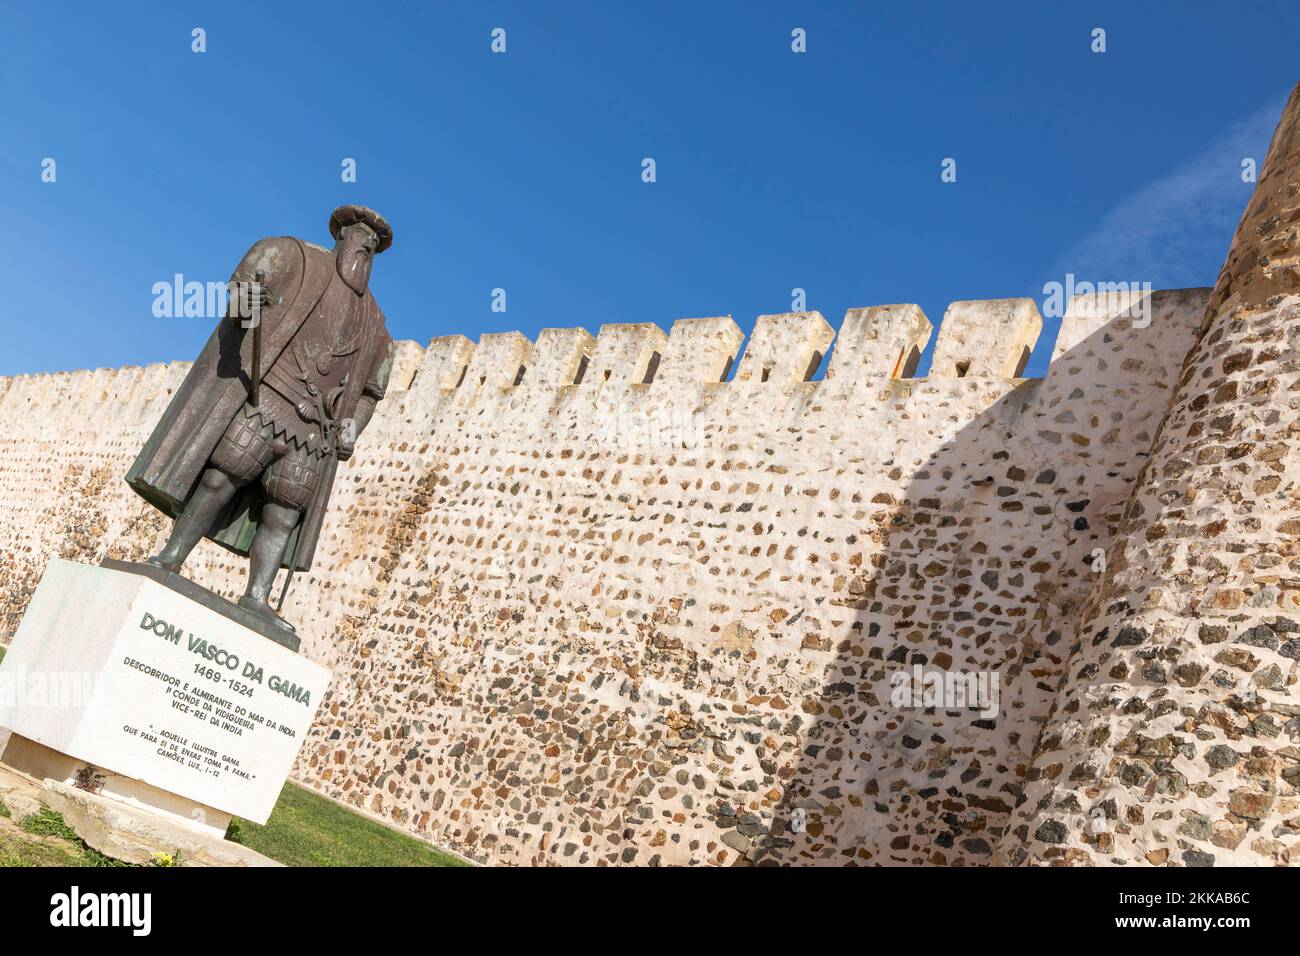 Sines. Portugal - 9 mars 2020 : statue de l'explorateur portugais Vasco da Gama devant l'église de Sines. Alentejo, Portugal, Europe Banque D'Images